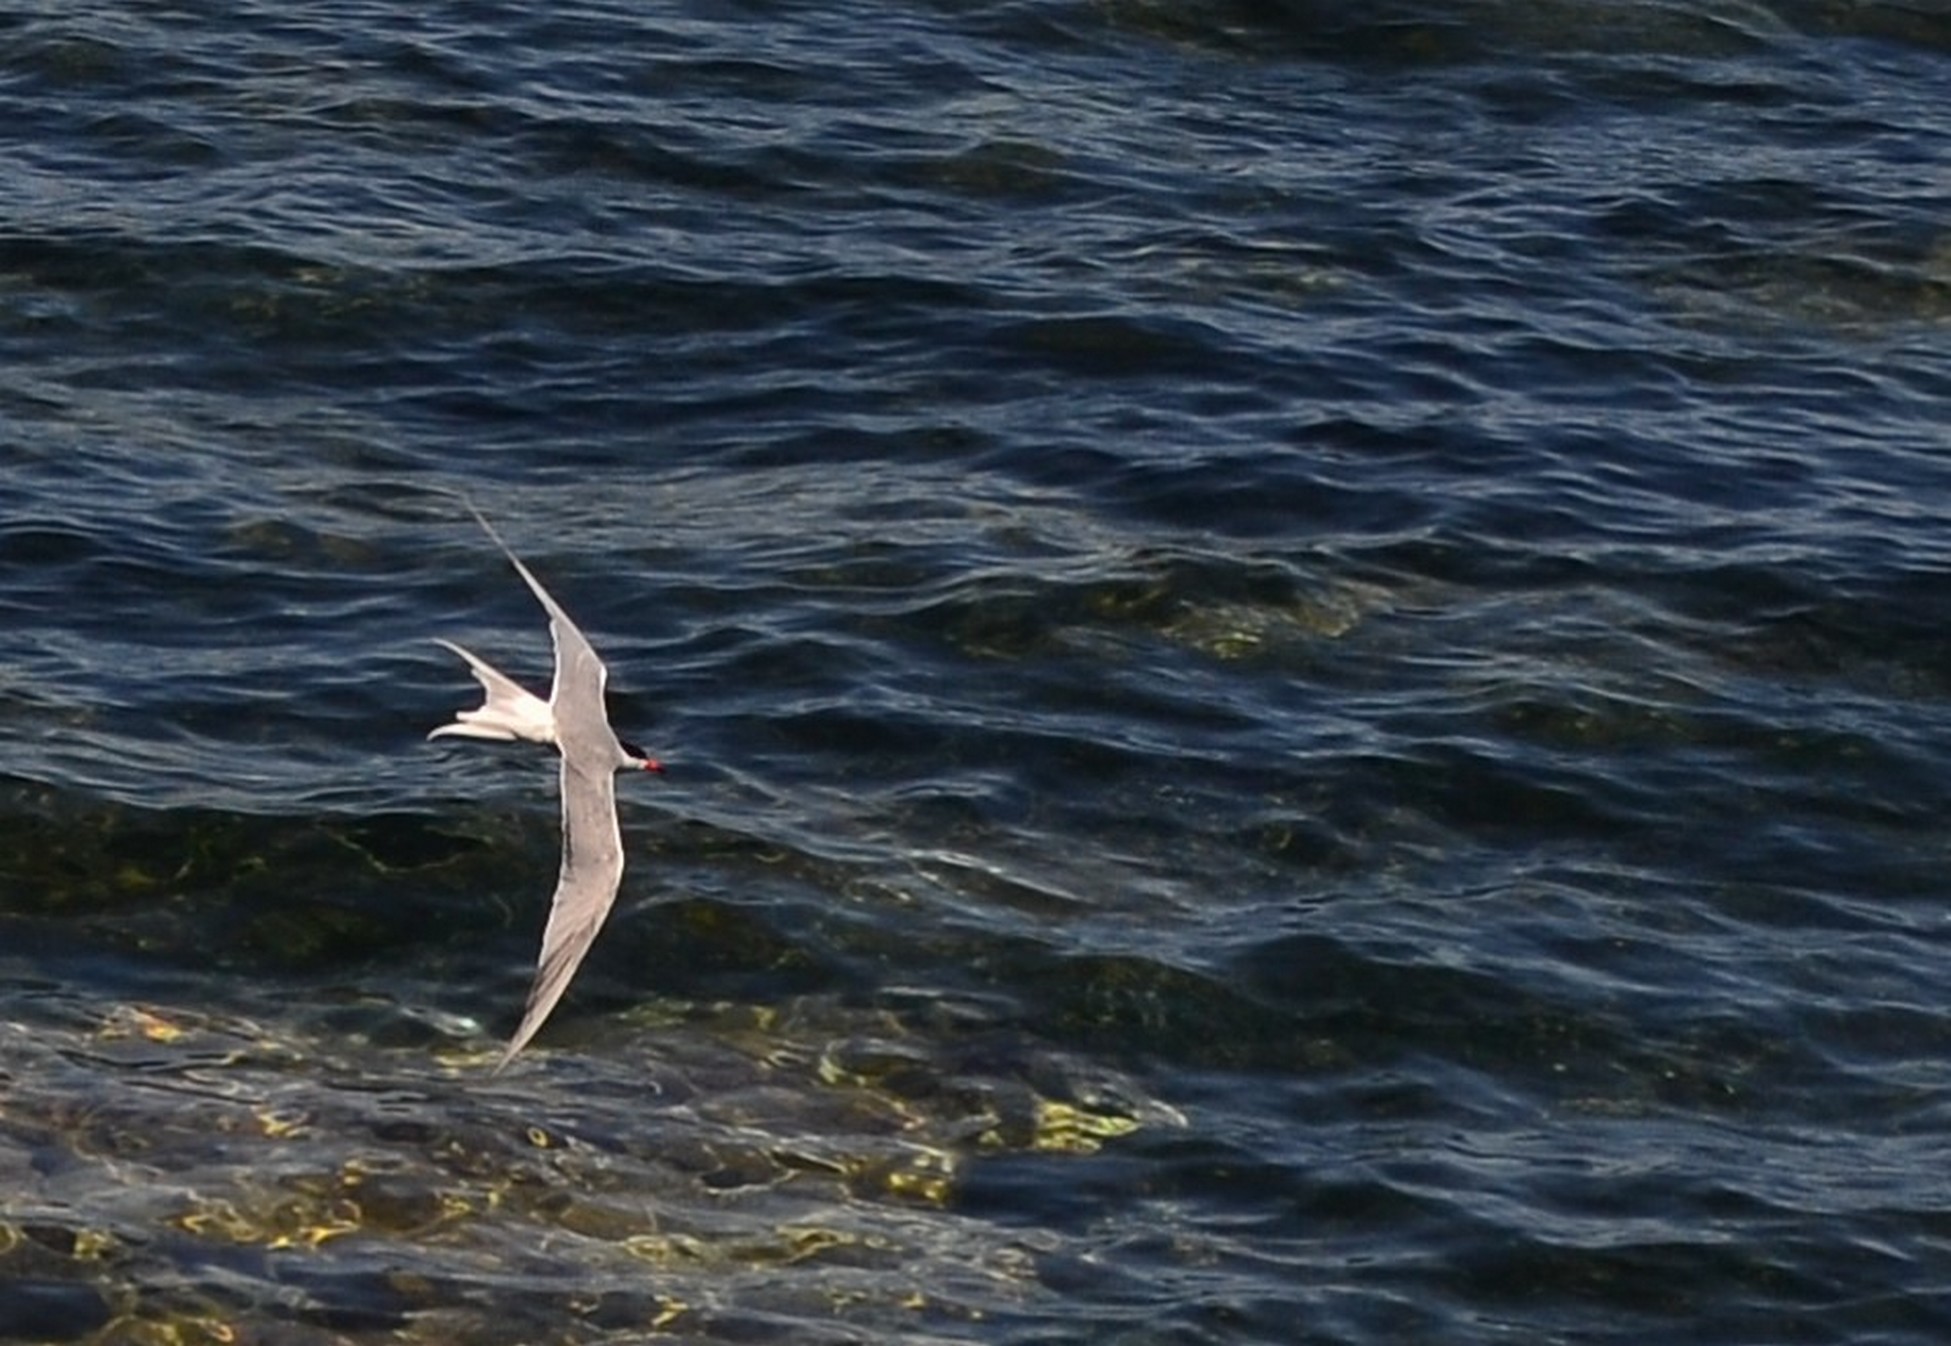 Beaulieu sur mer - France - Tern in flight....